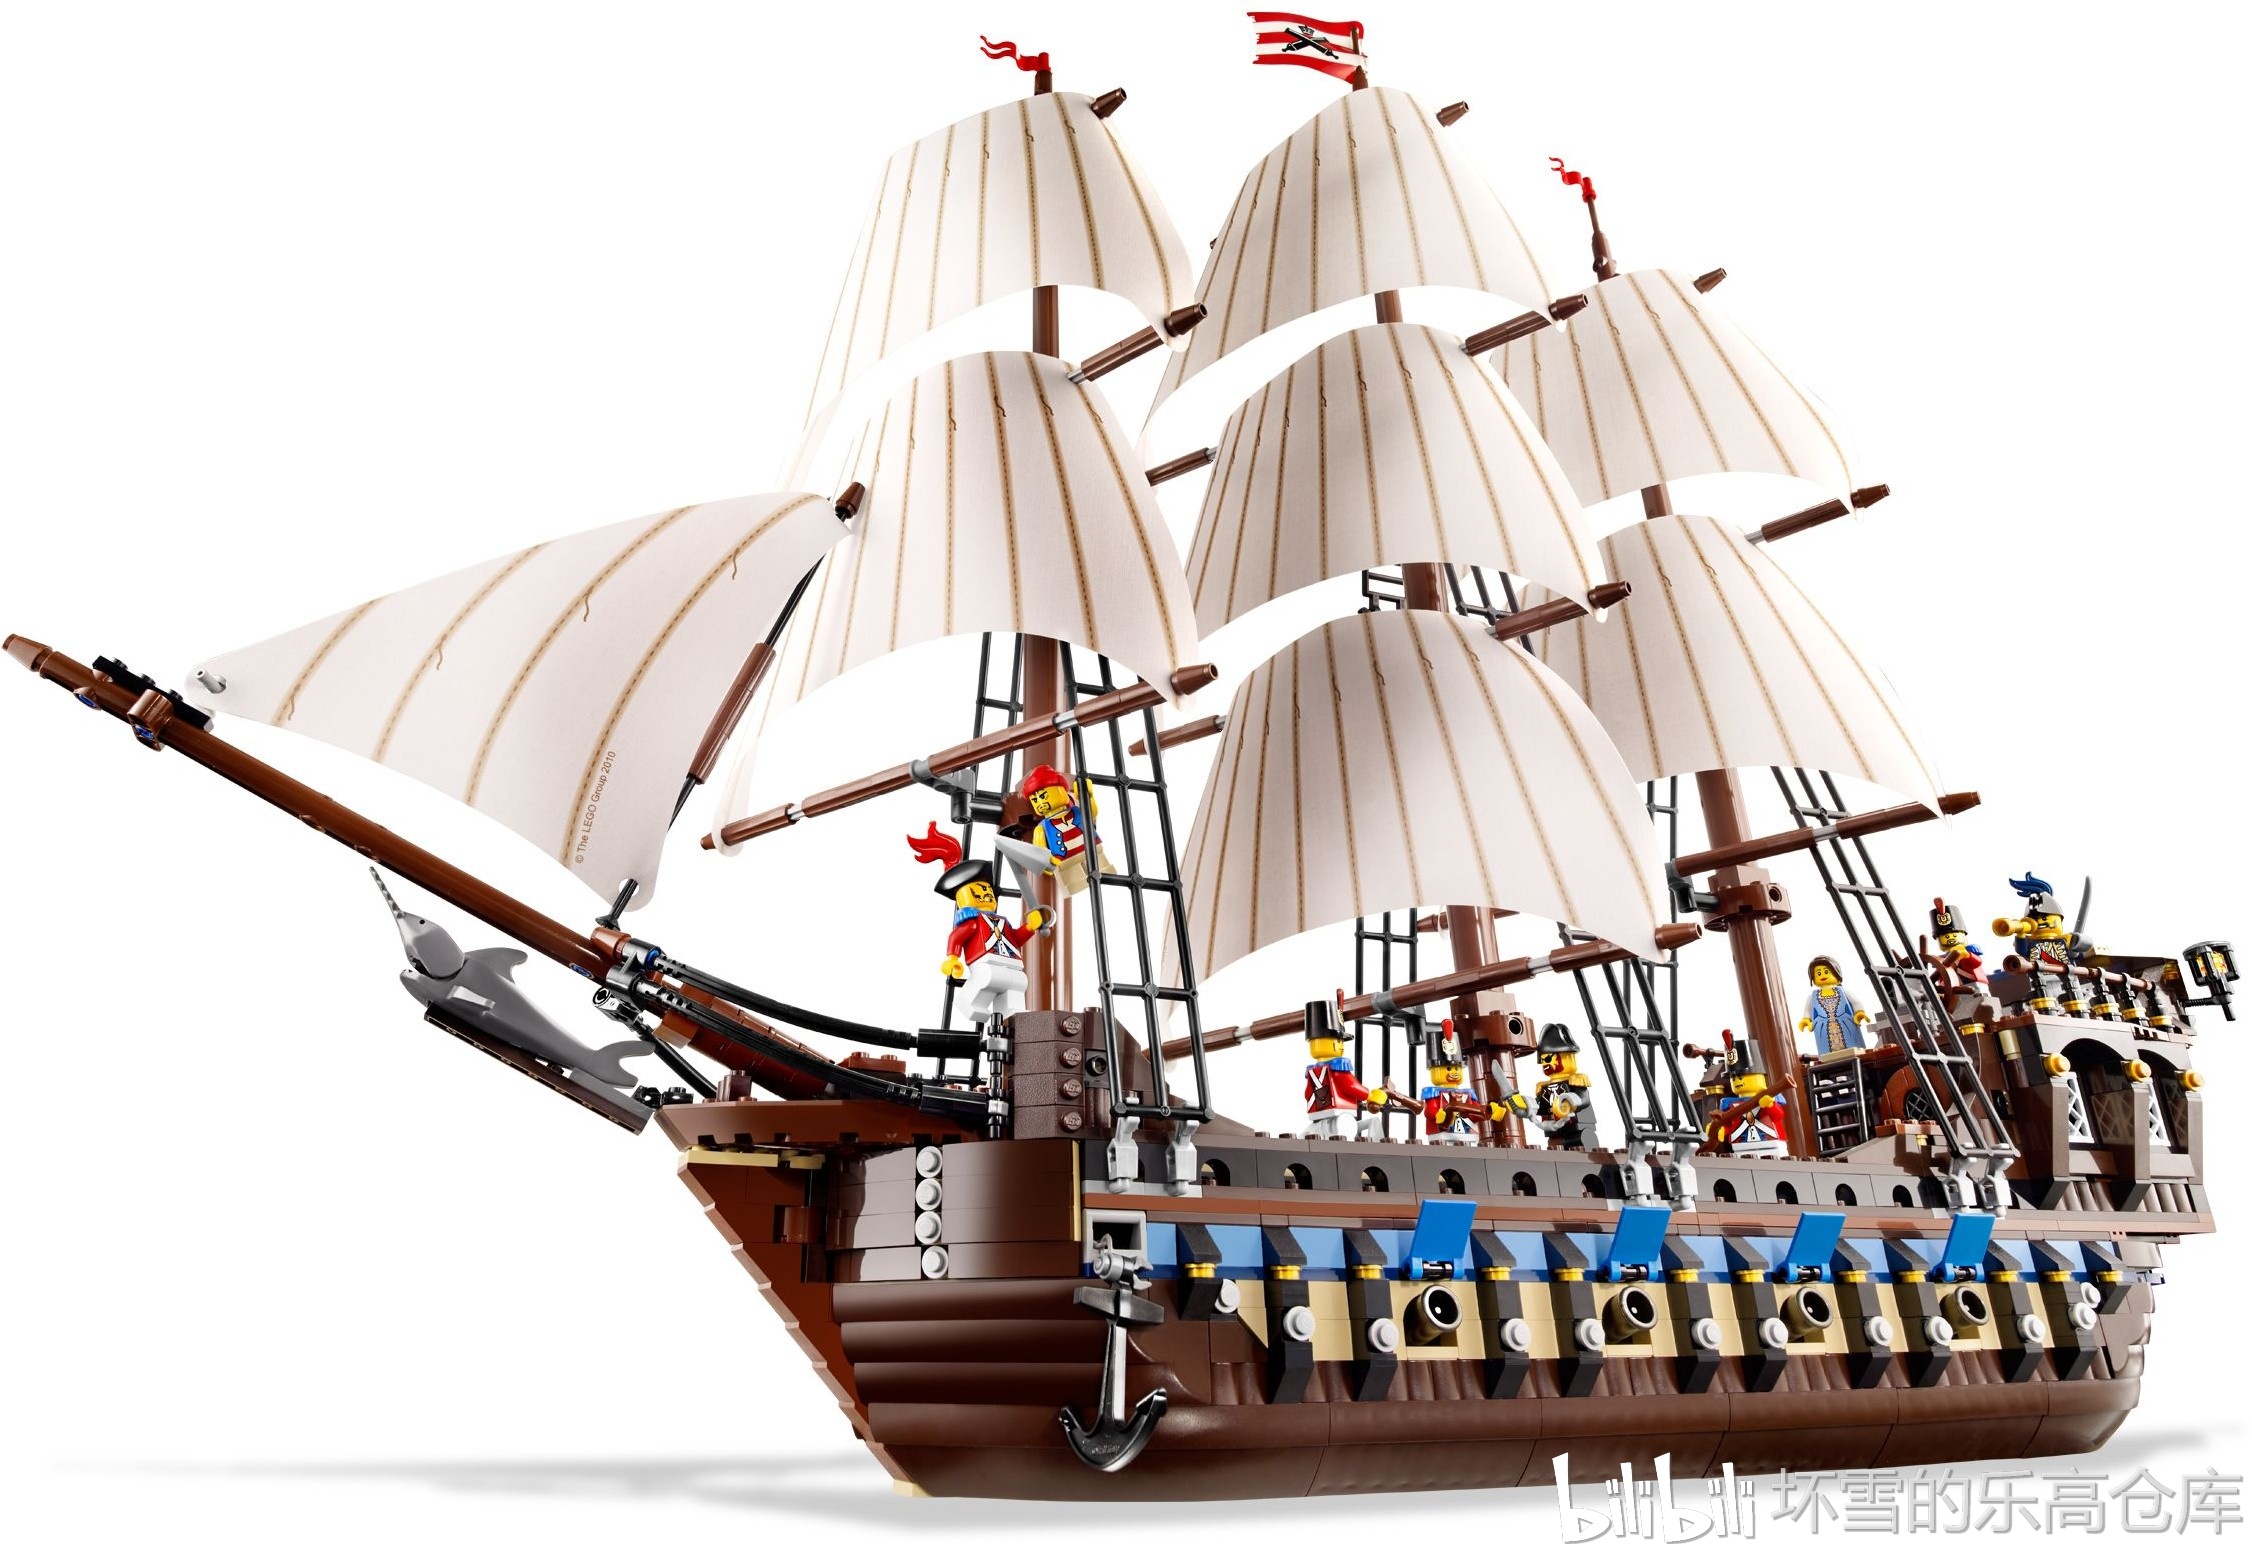 艺术家3D打印著名海盗船“金鹿号” 还原海上冒险传奇 - 3D打印世界